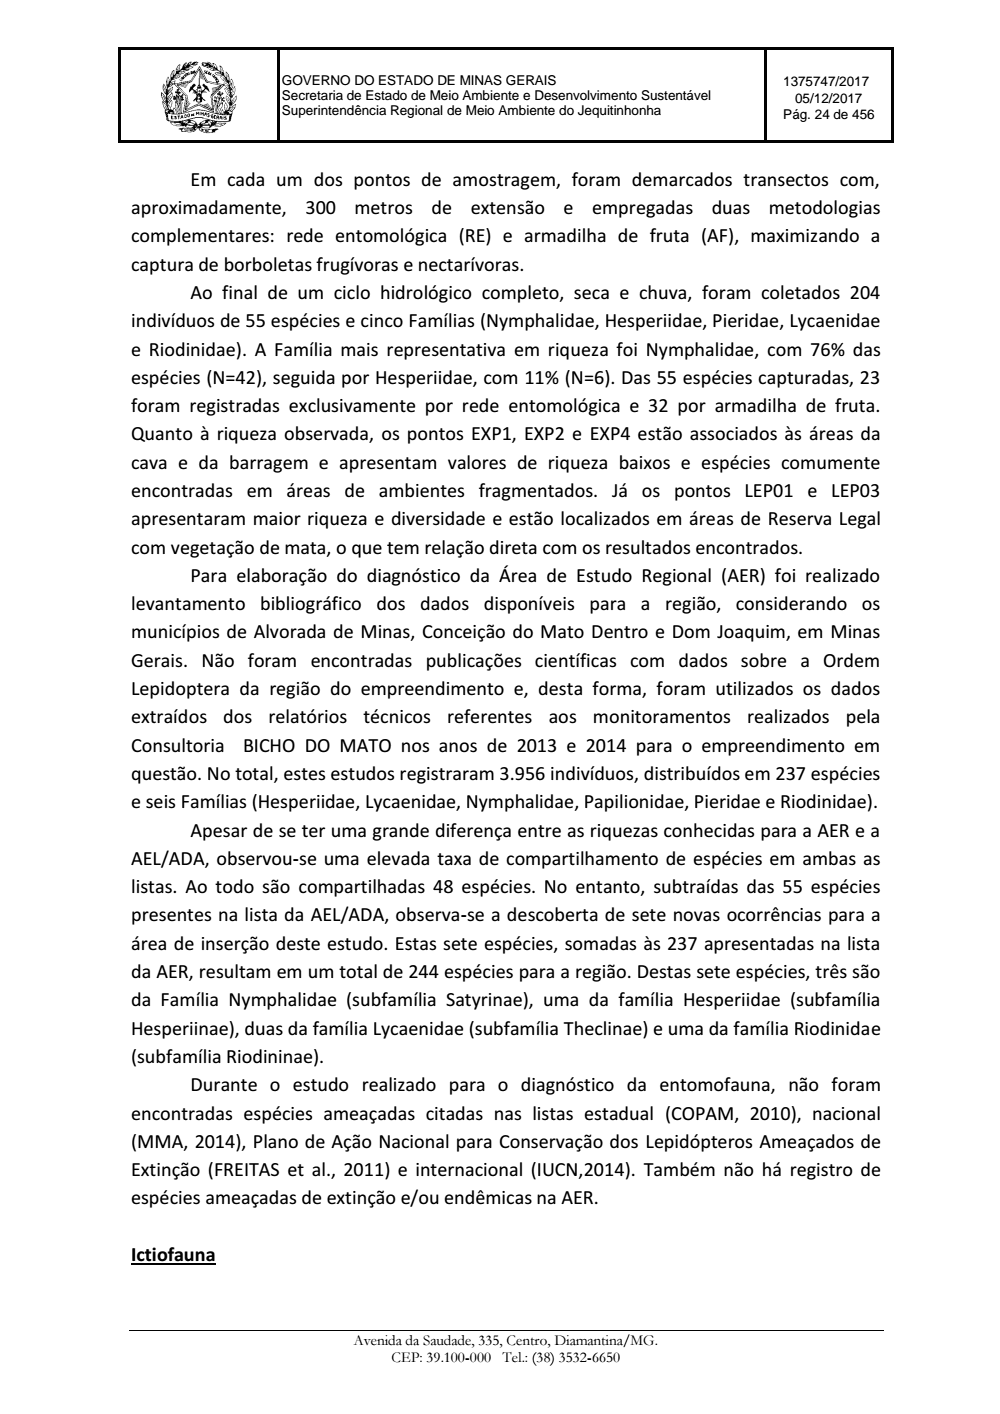 Page 24 from Parecer único da Secretaria de estado de Meio Ambiente e Desenvolvimento Sustentável (SEMAD)